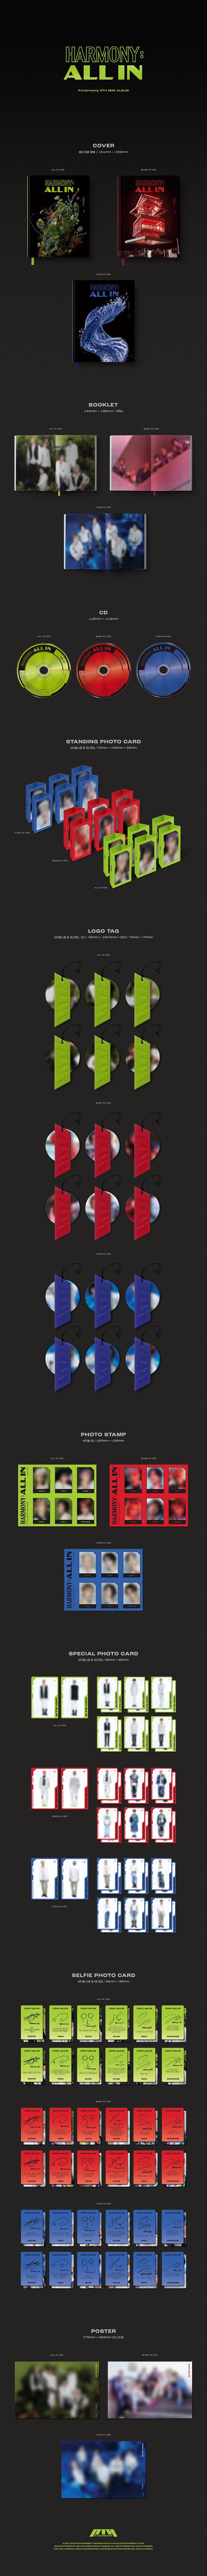 [미개봉] 피원하모니 (P1Harmony) / Harmony : All In (6th Mini Album) (All In/Bump In/Flow In Ver. 랜덤 발송)